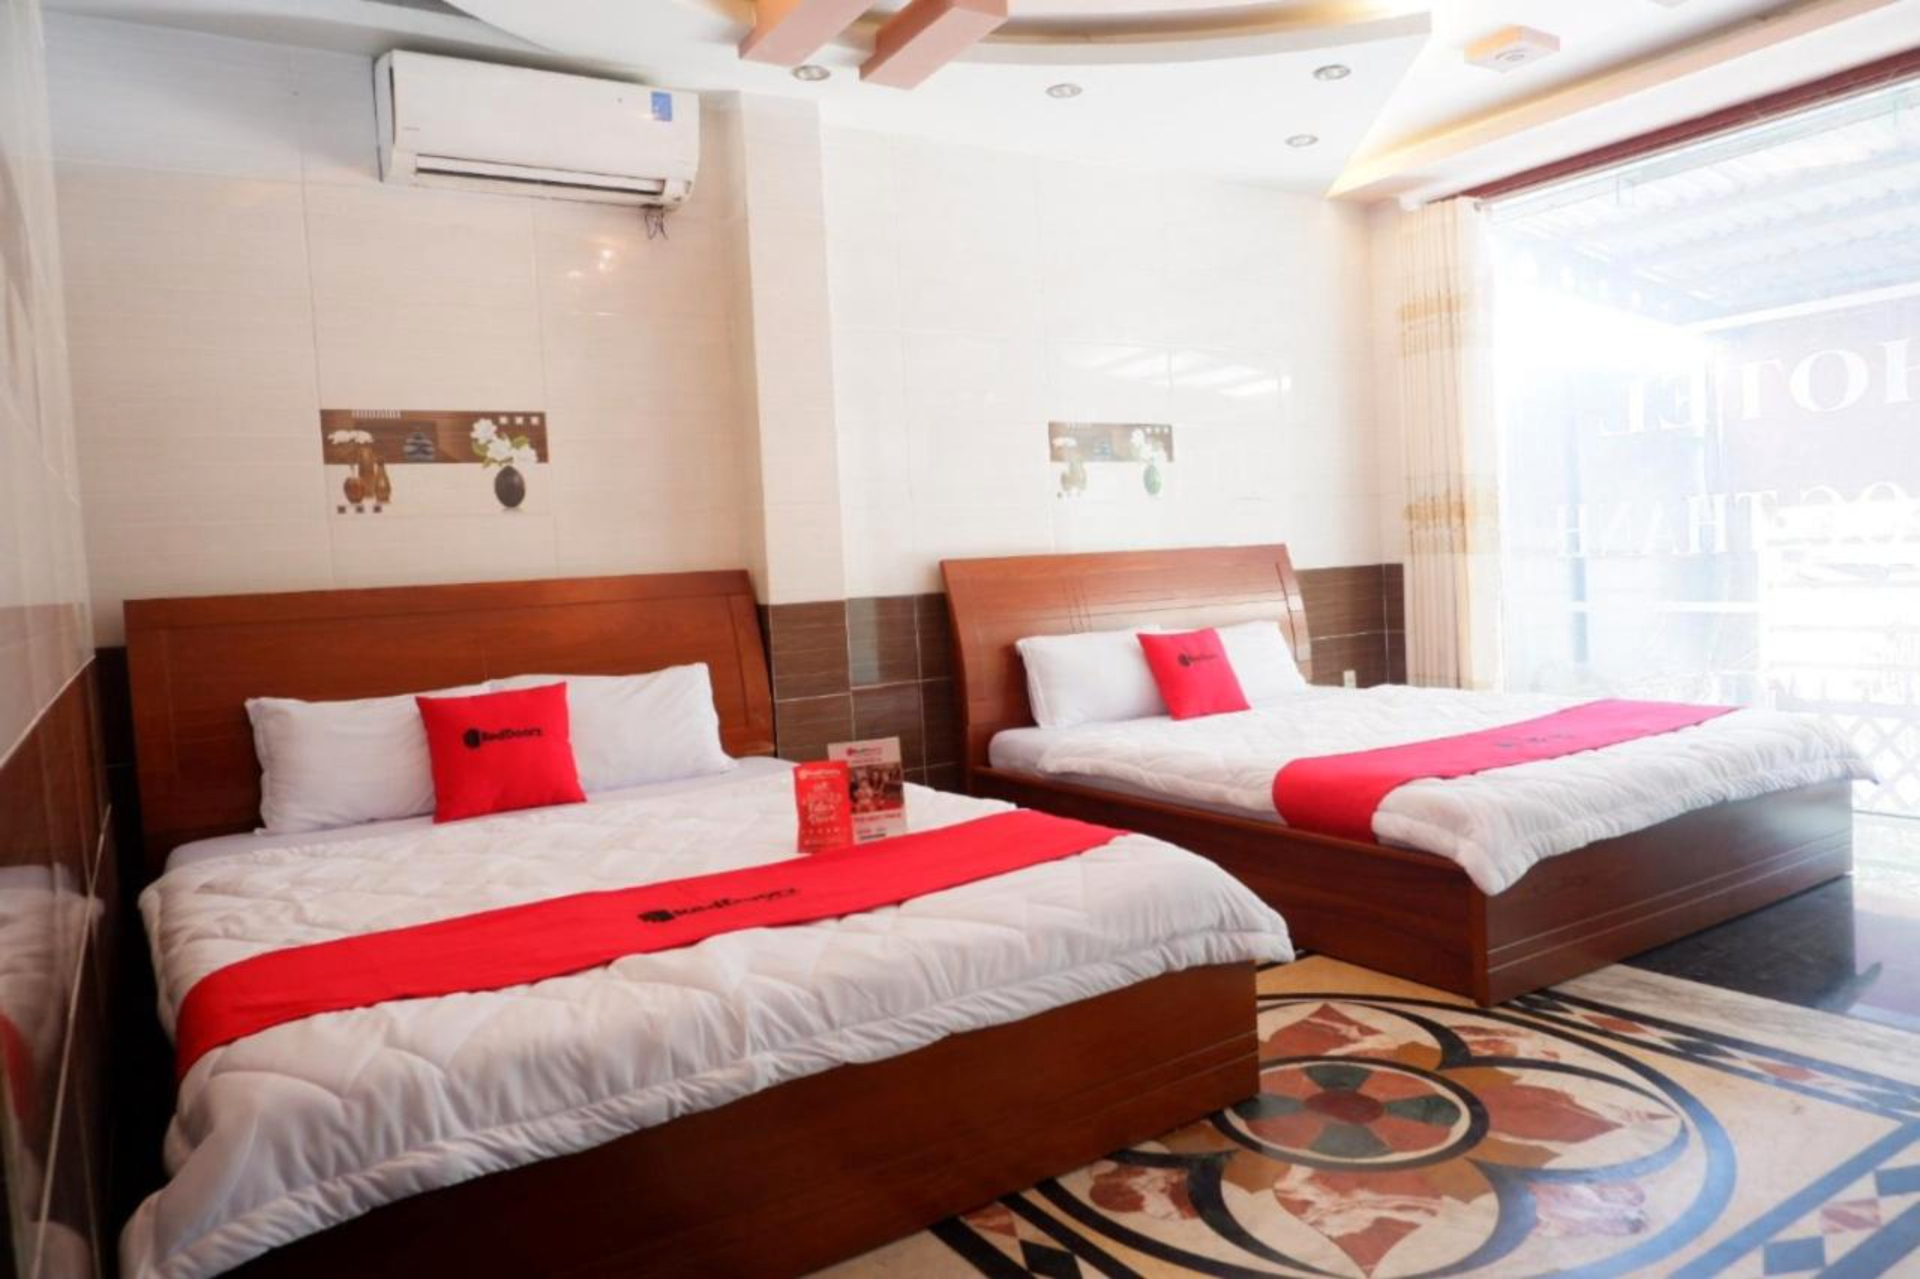 Bedroom 5, RedDoorz Ngoc Thanh Hotel, Binh Tan